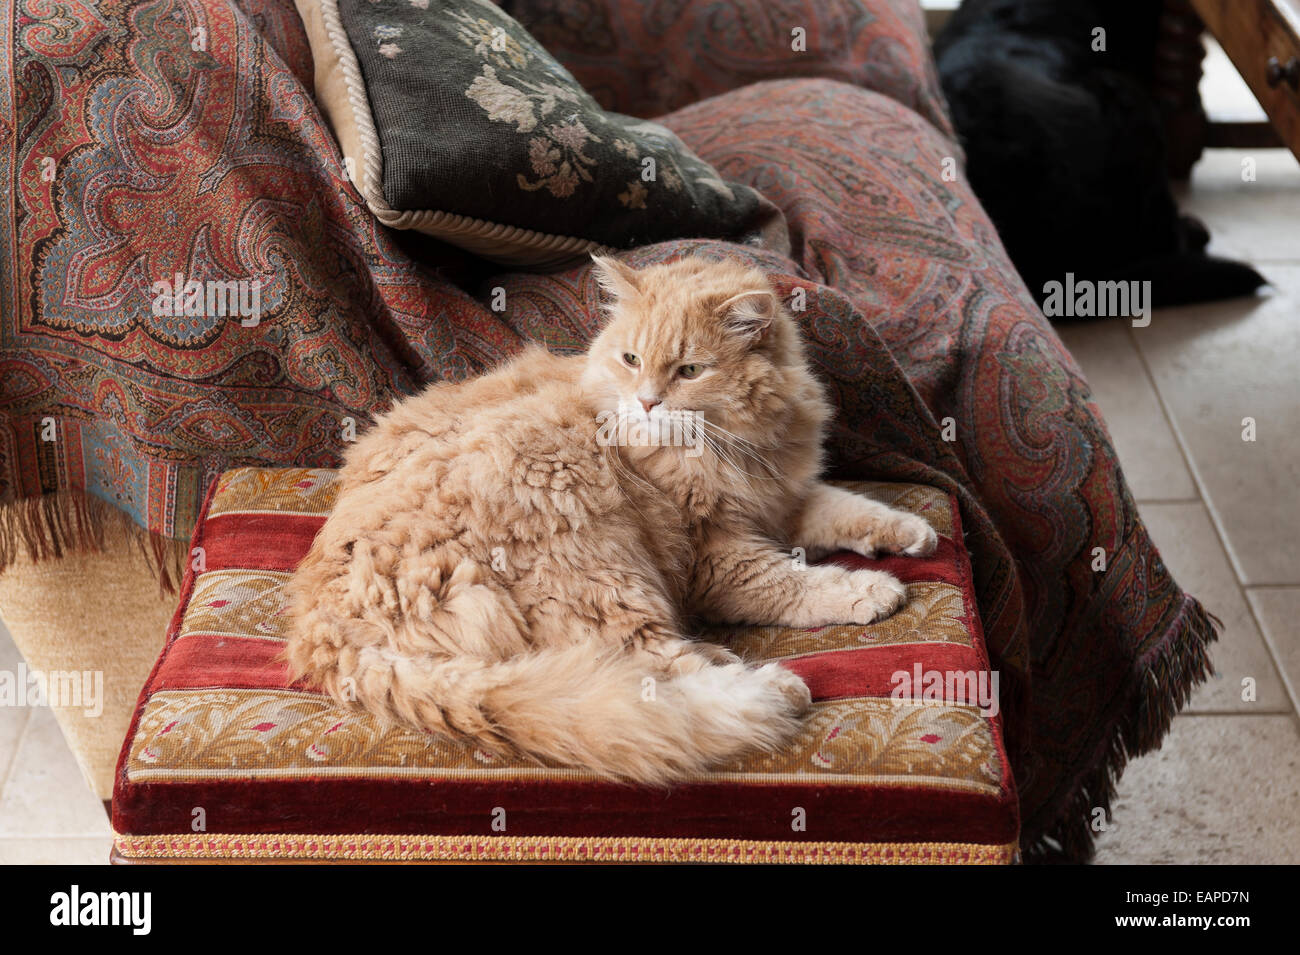 Fluffy gato sentado en un taburete con tapicería telas estampadas paisley en el fondo Foto de stock